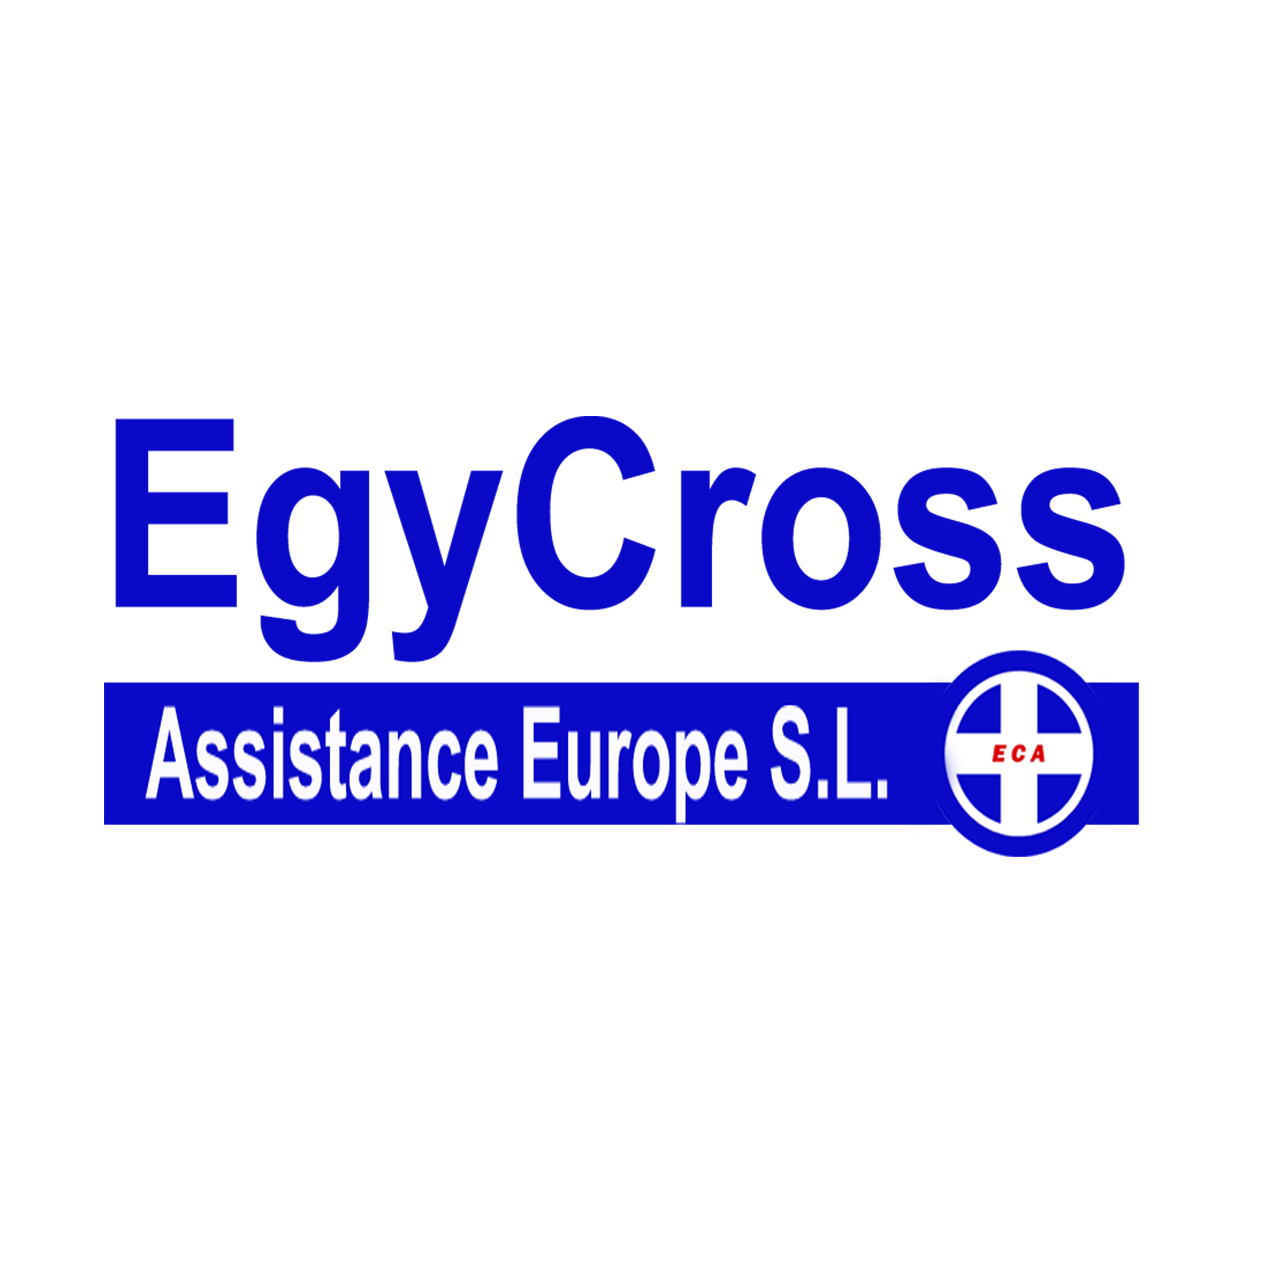 Egycross Assistance